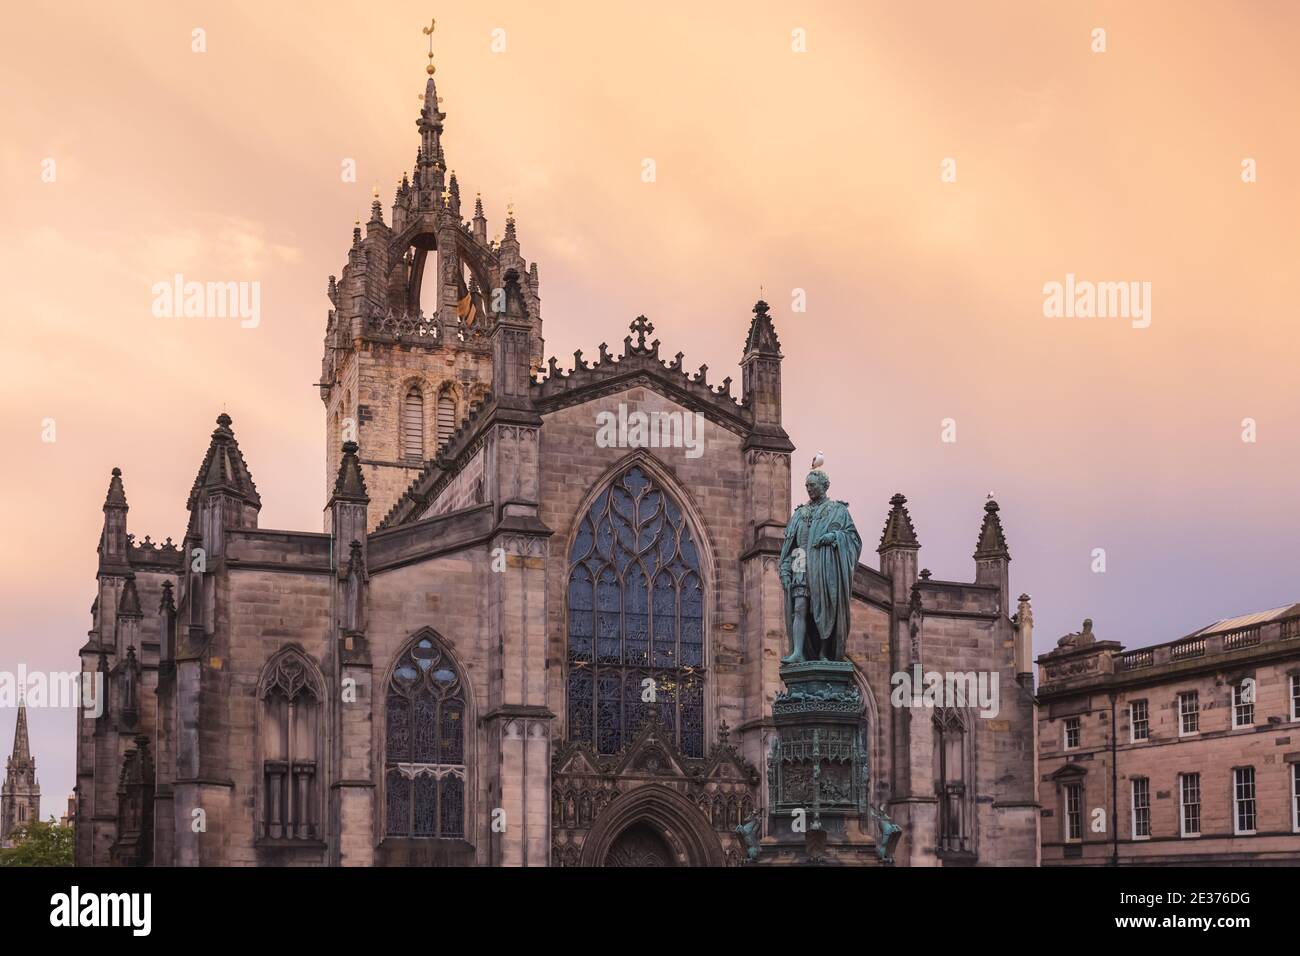 Die gotische Architektur der St, Giles' Cathedral vor einem dramatischen Sonnenuntergang Himmel entlang der Royal Mile in Edinburghs Altstadt. Stockfoto